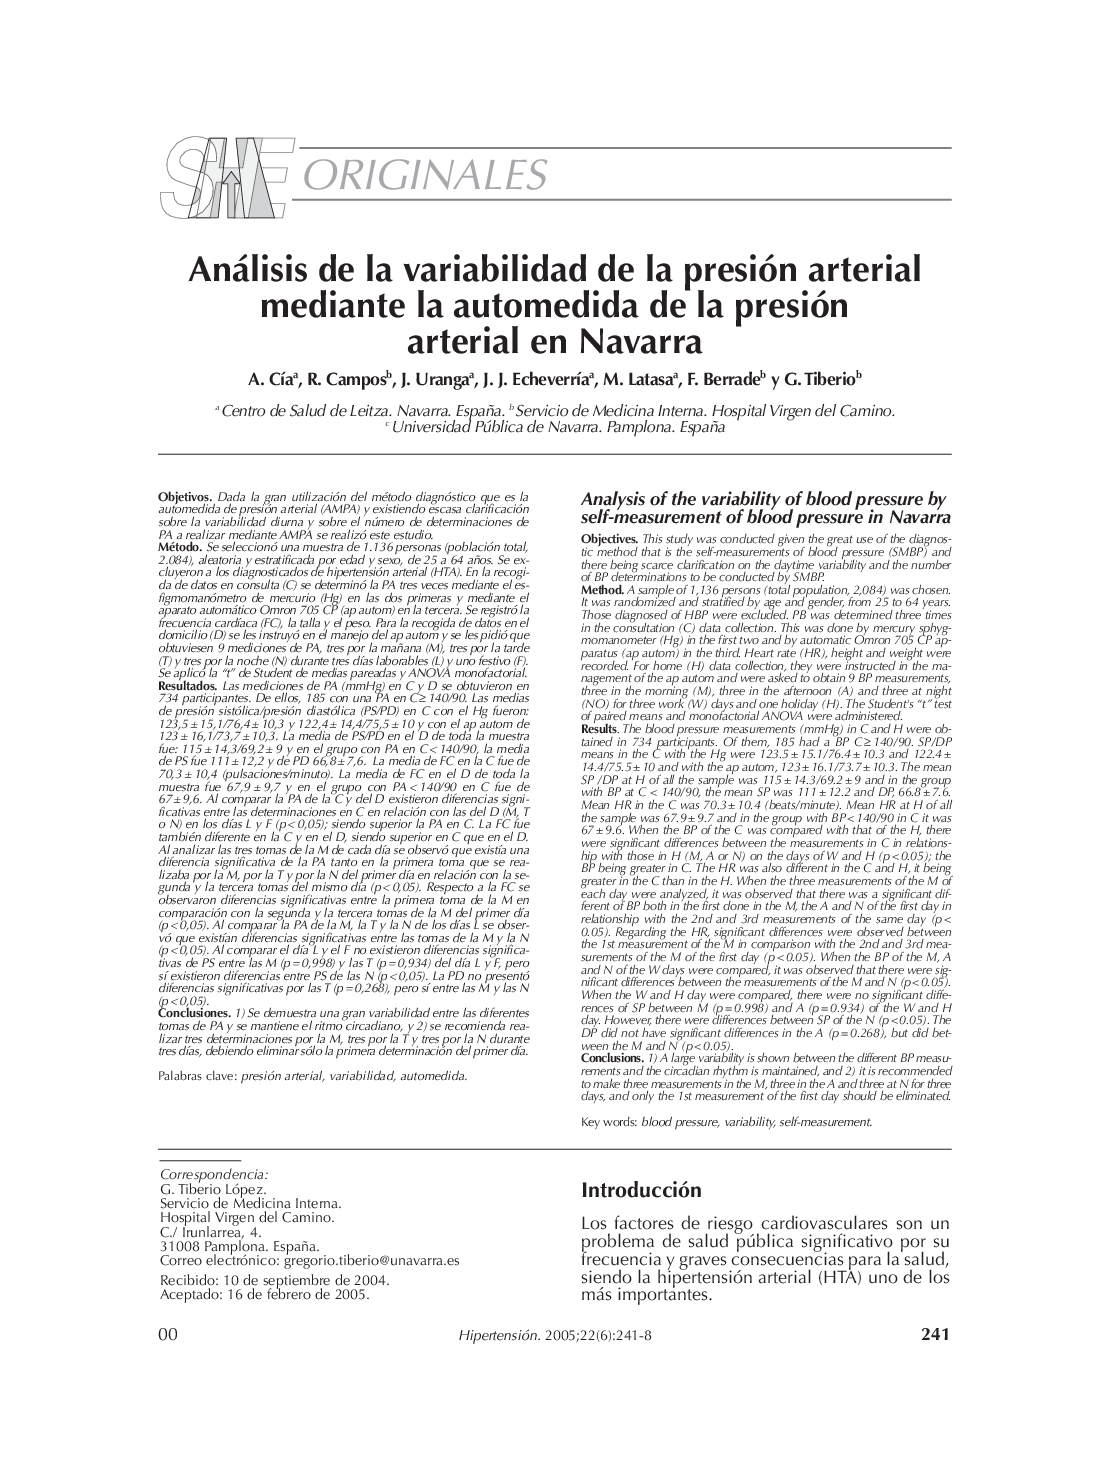 Análisis de la variabilidad de la presión arterial mediante la automedida de la presión arterial en Navarra